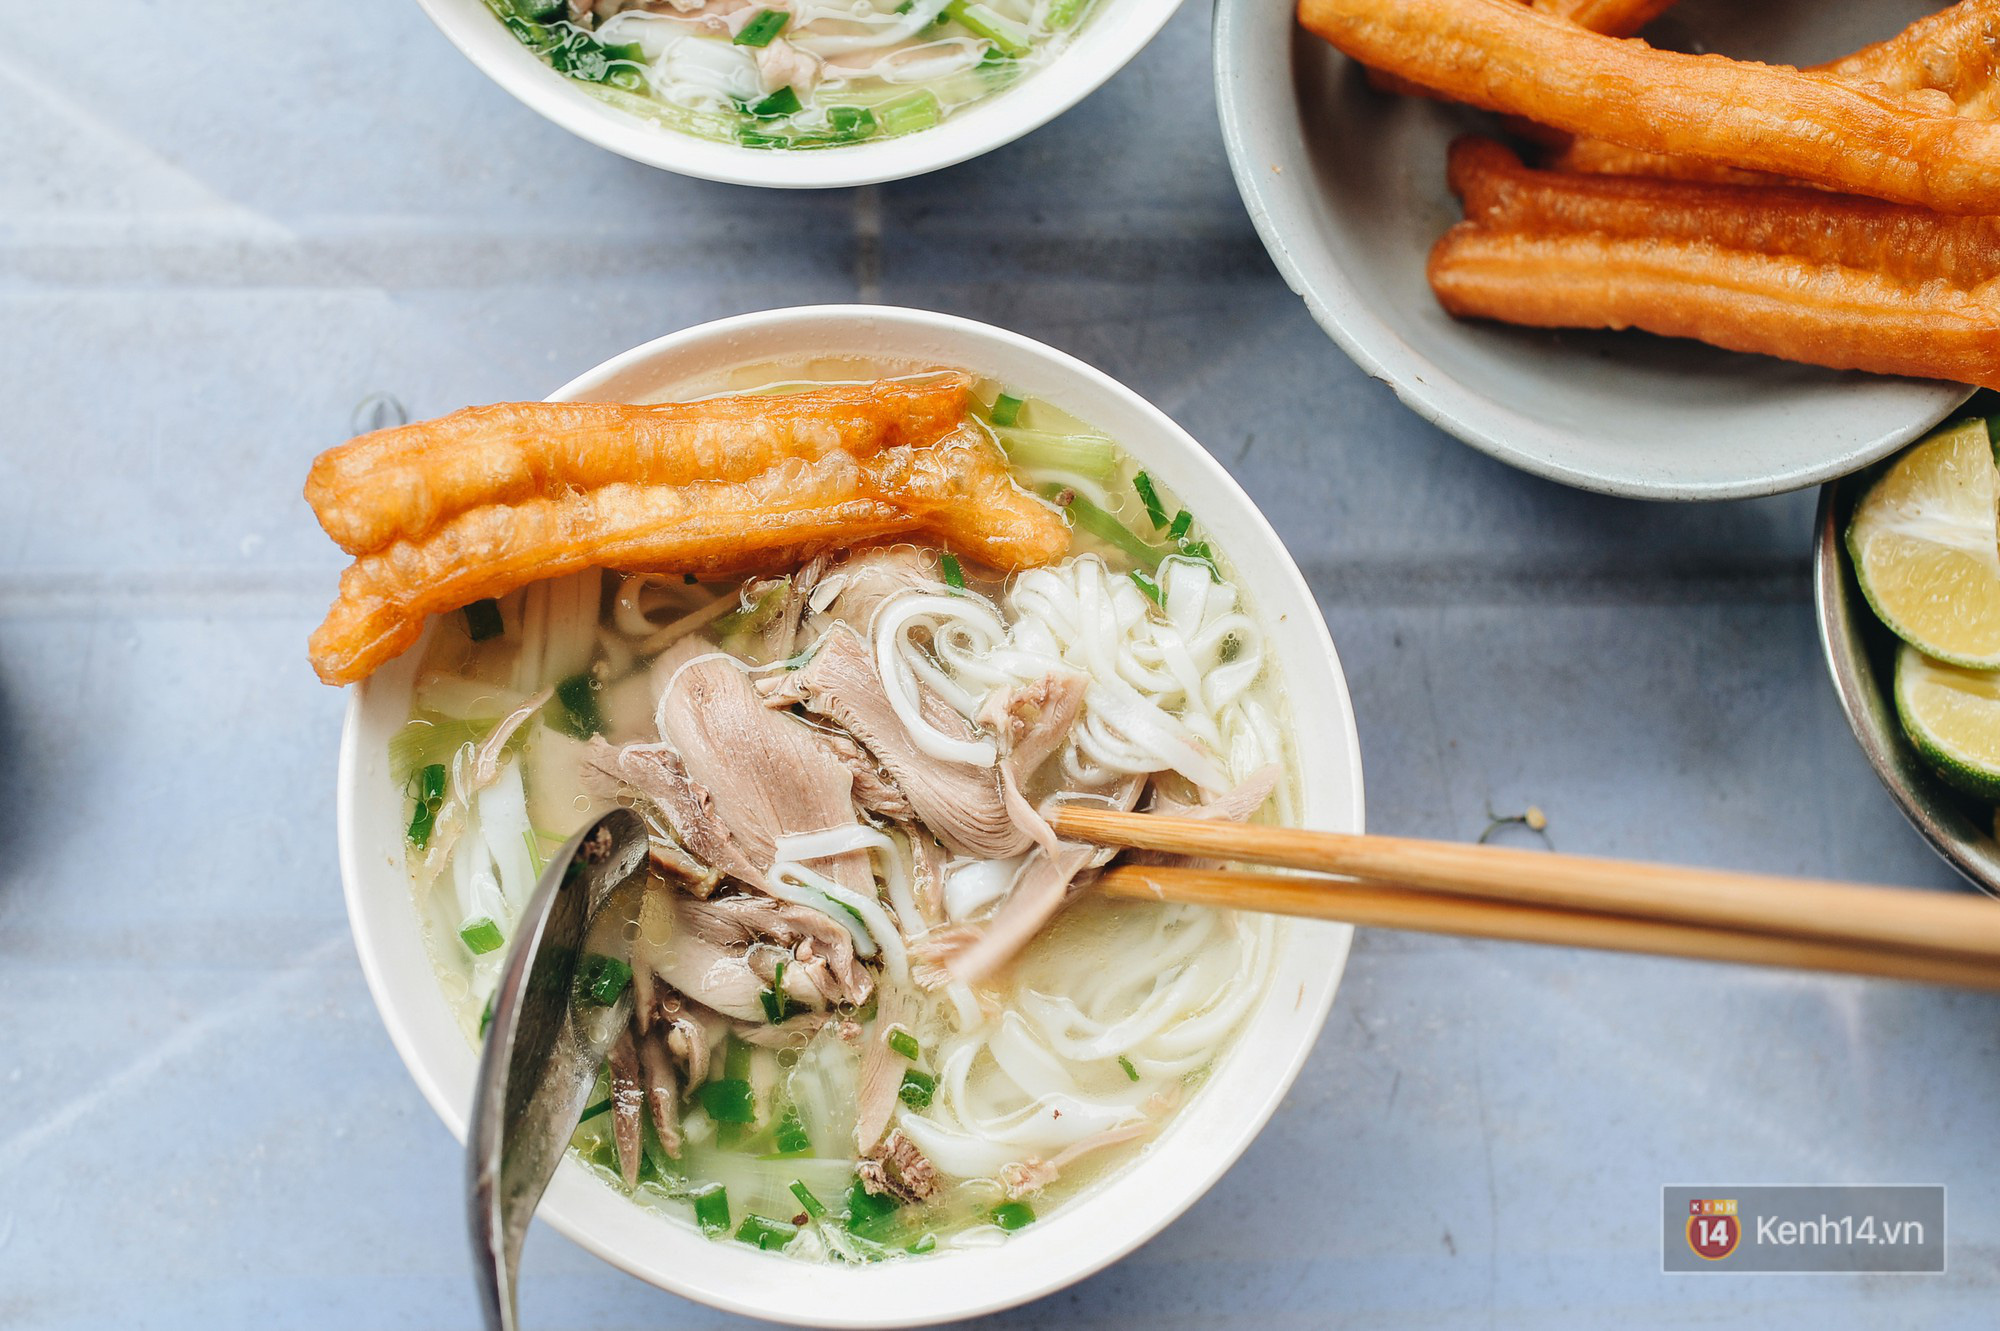 Đi từ hàng quán đến từng bàn ăn của mỗi nhà, phở ngày càng khẳng định vị trí của nền ẩm thực Việt Nam - Ảnh 2.